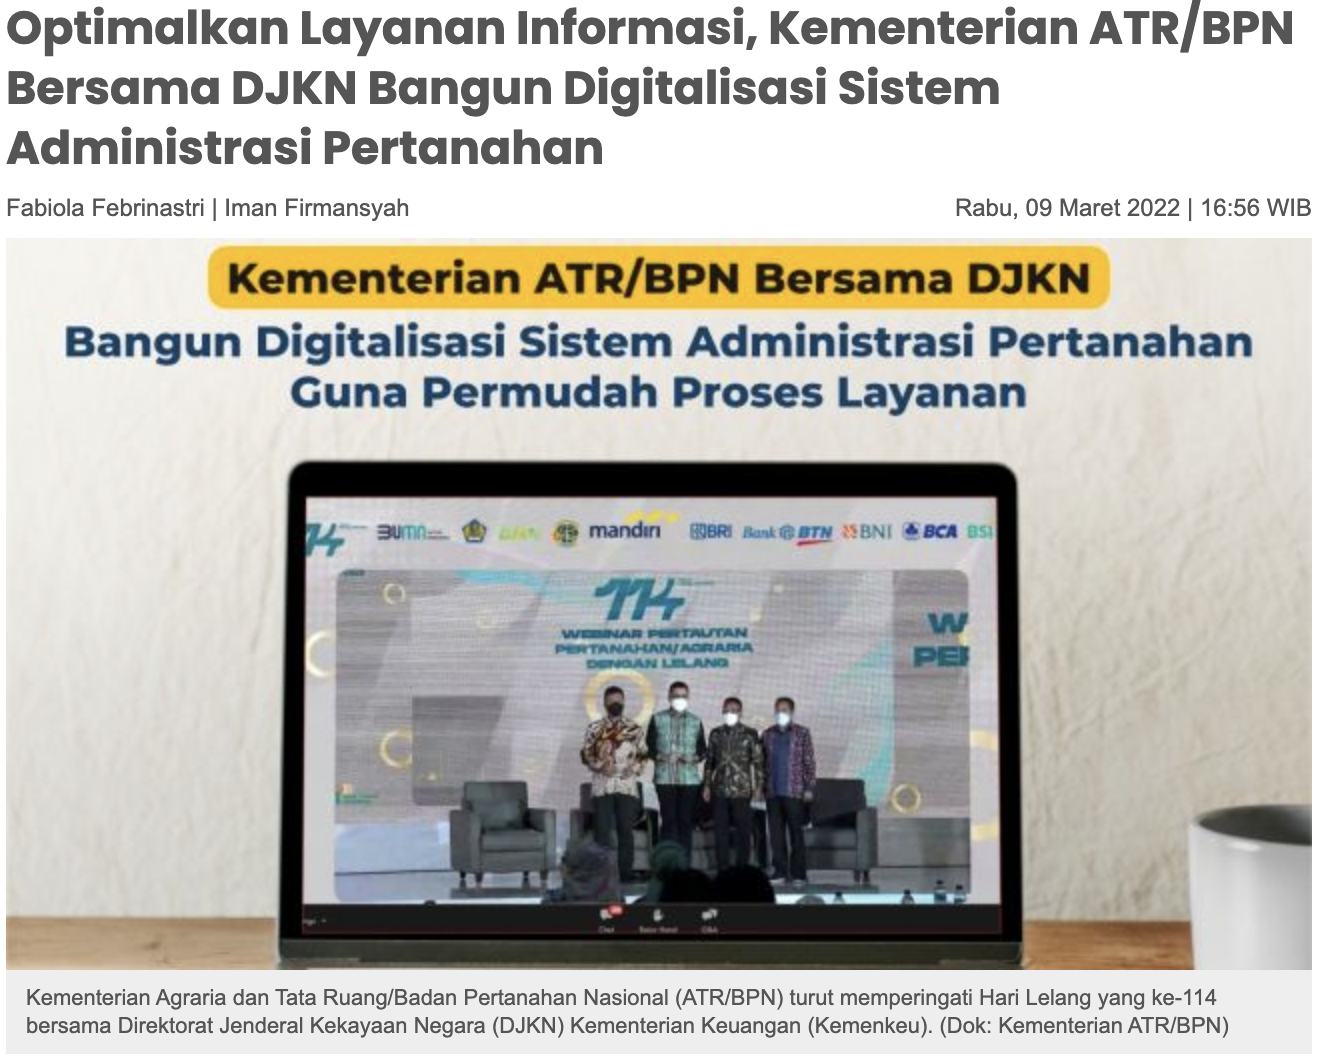 Optimalkan Layanan Informasi, Kementerian ATR/BPN Bersama DJKN Bangun Digitalisasi Sistem Administrasi Pertanahan